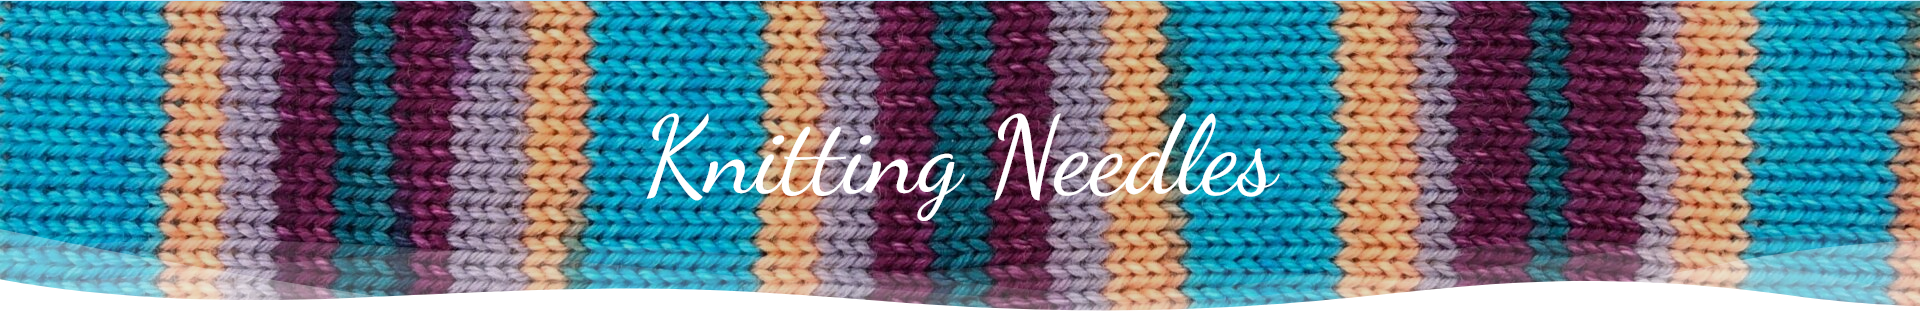 Knitting needles banner